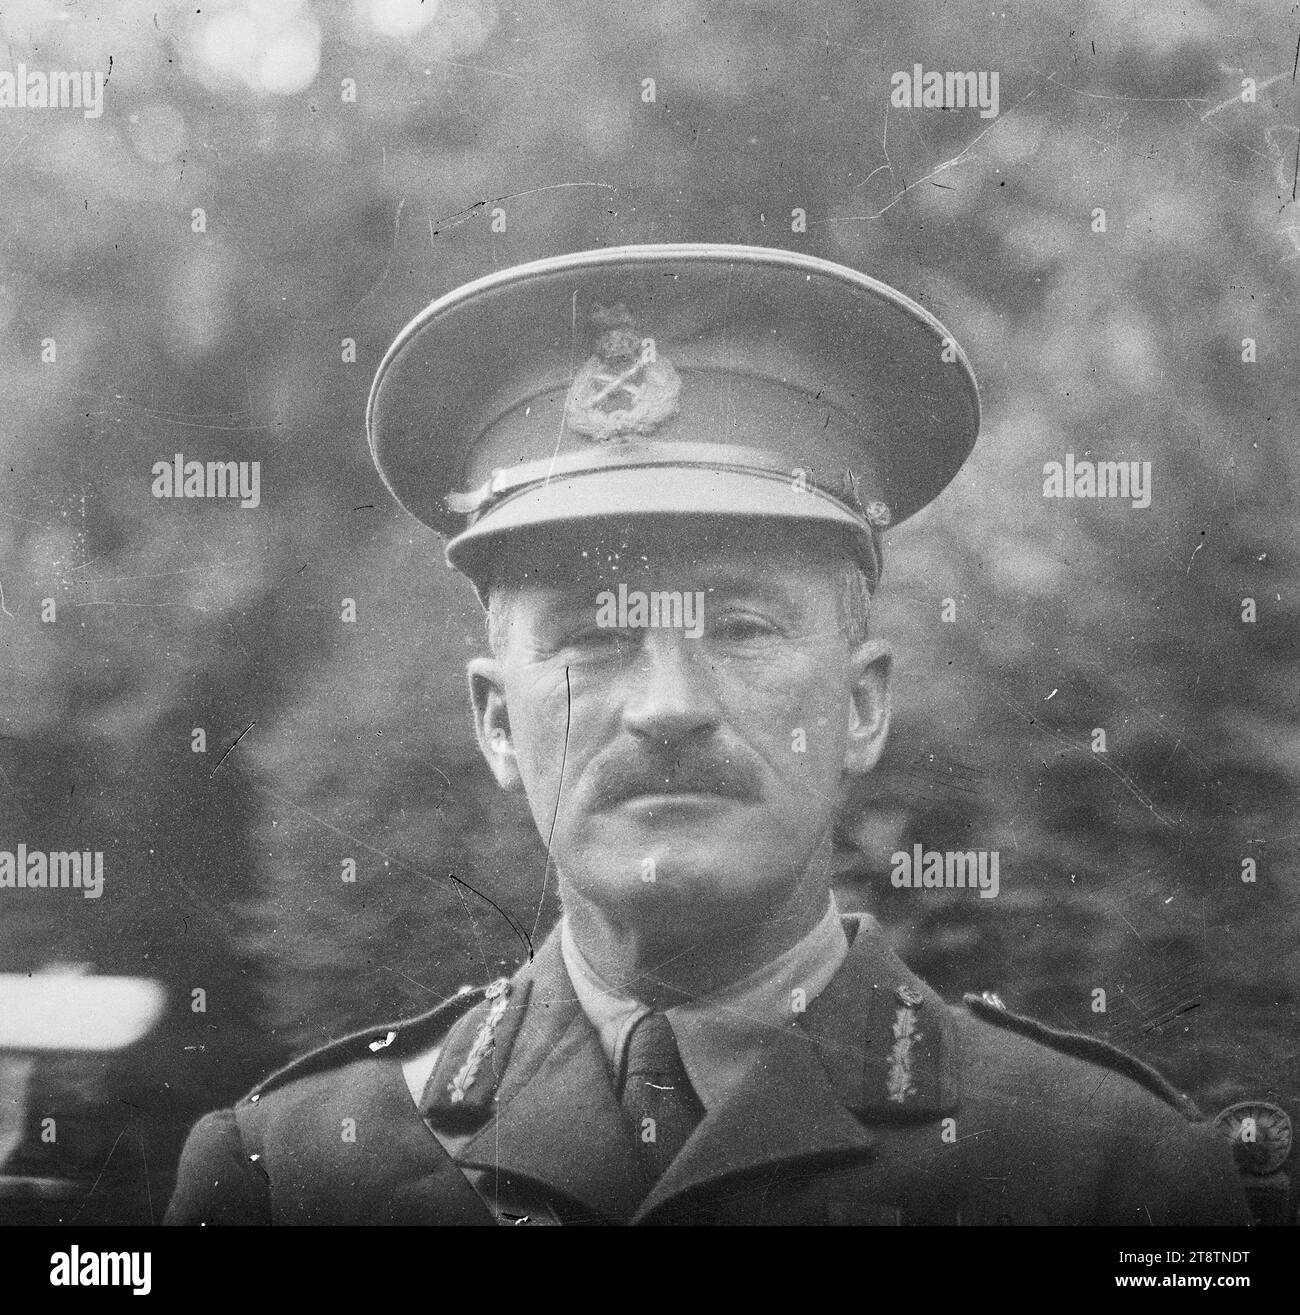 Brigadier-général George Napier Johnston, Portrait du brigadier-général George Napier Johnston, commandant de la Royal Artillery de la division néo-zélandaise pendant la première Guerre mondiale Photographie prise 1917 Banque D'Images